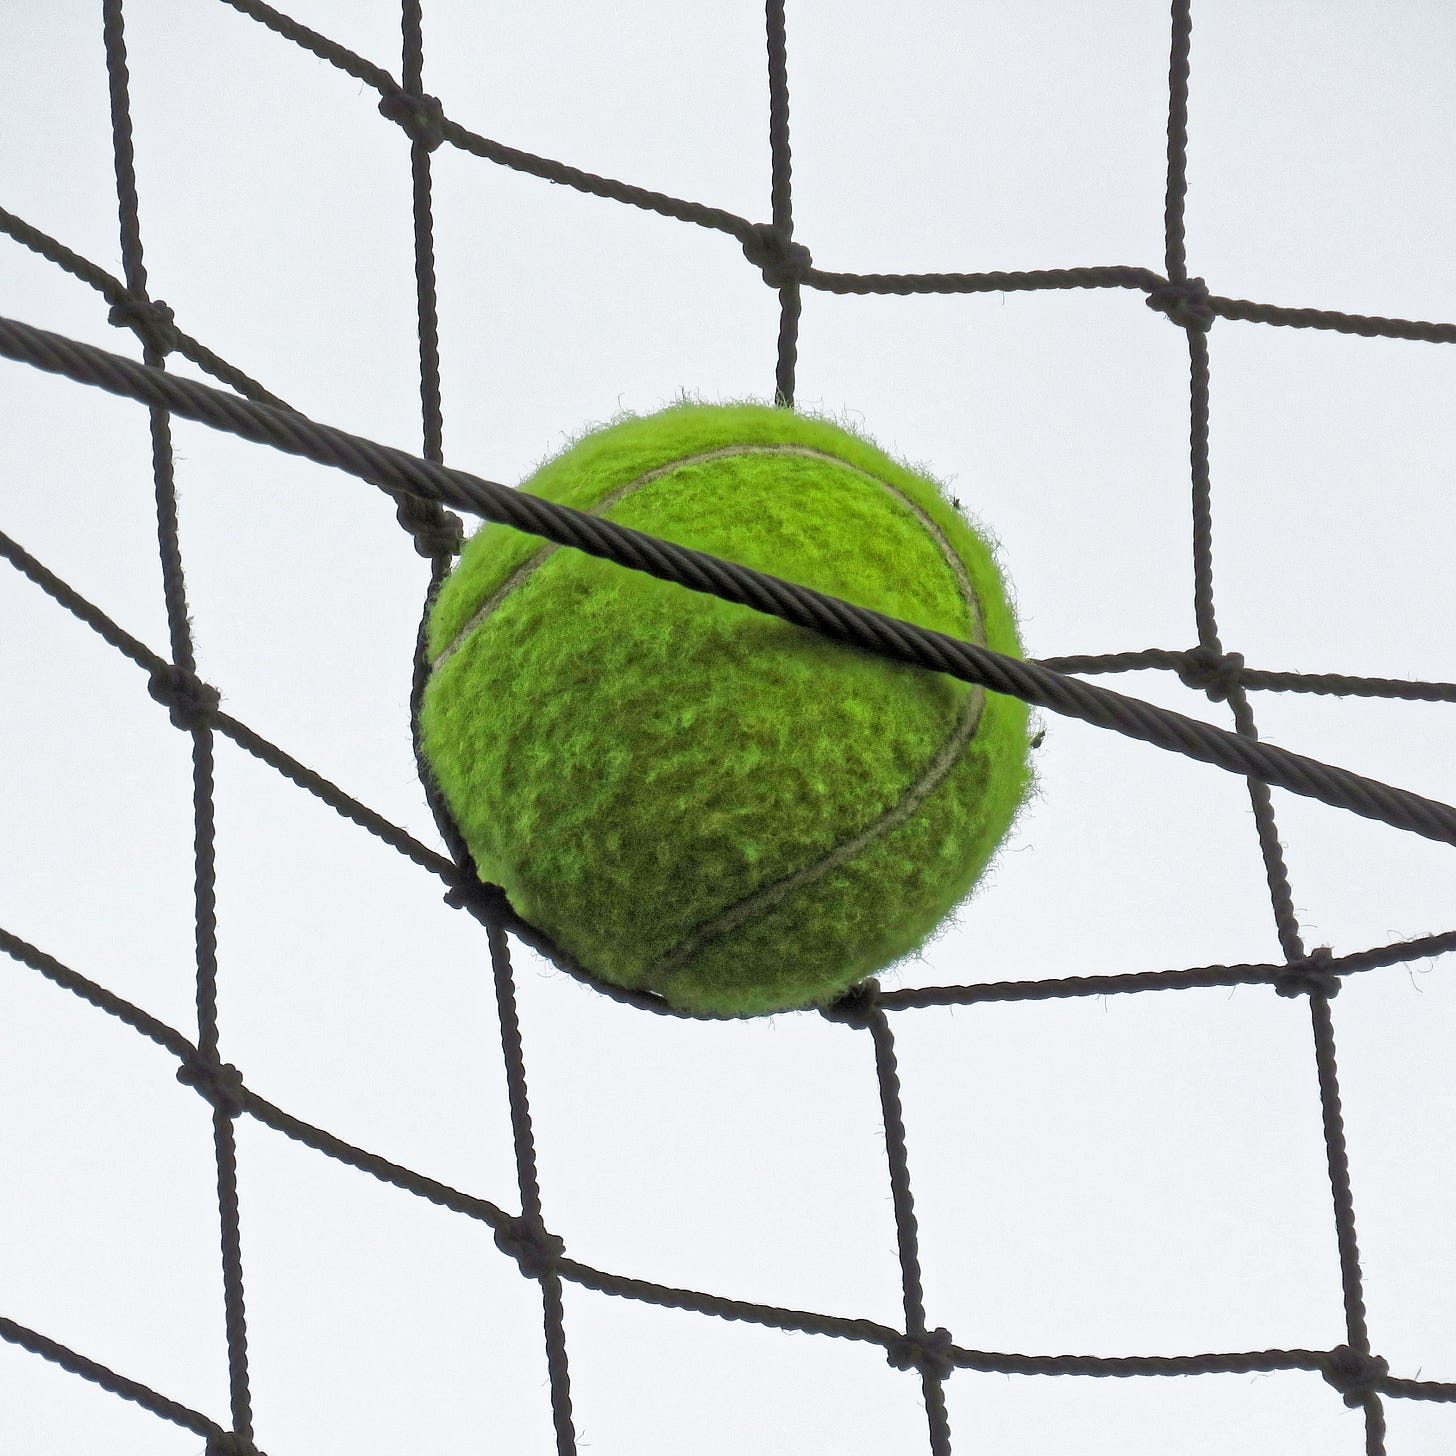 Tennis ball at Highgate Cricket Club, Crouch End, London